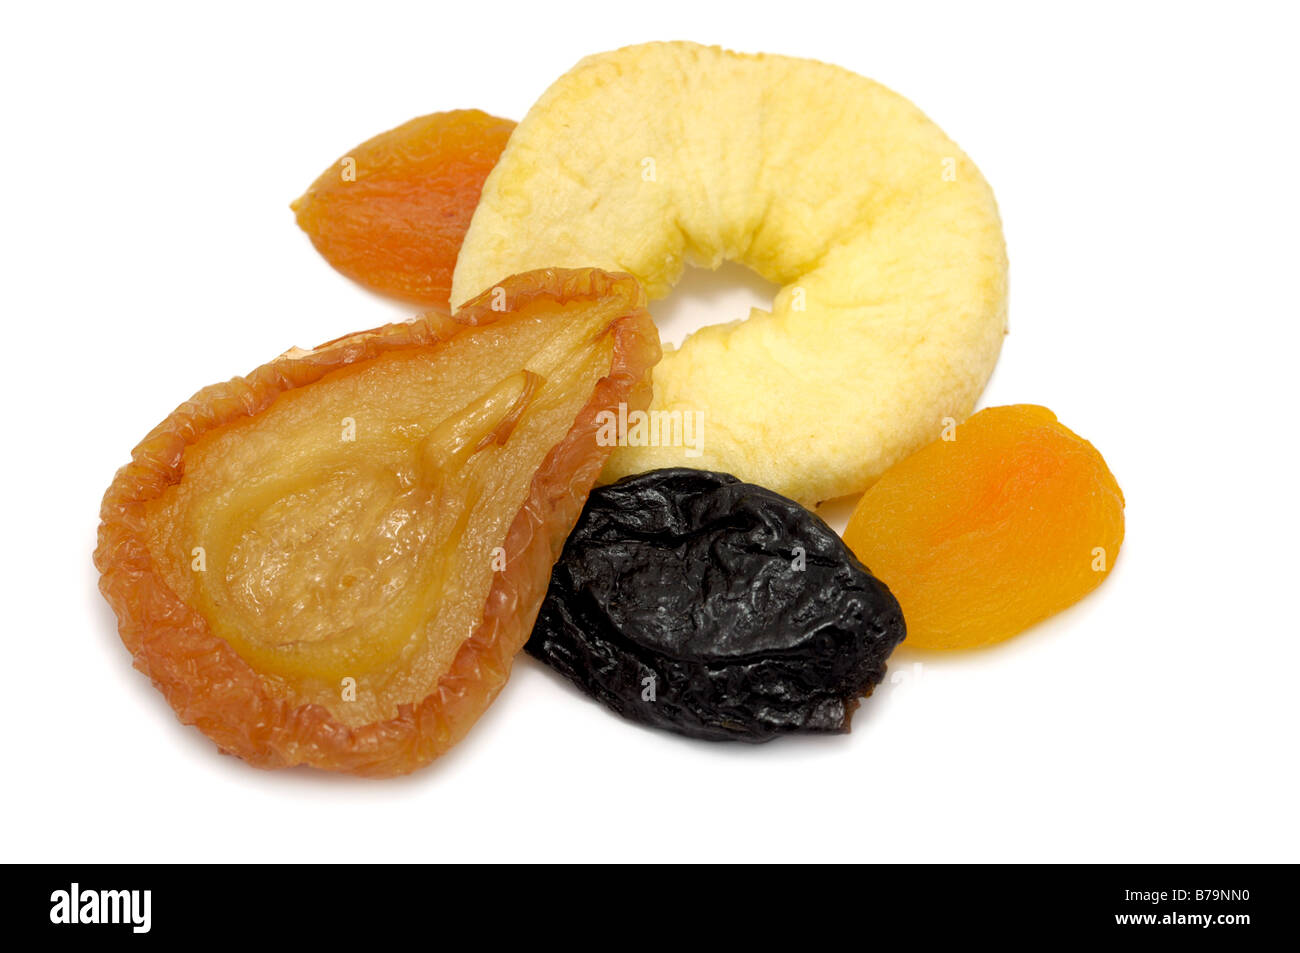 Fruits secs, Poire, Pomme, Prune, abricot anneau Banque D'Images